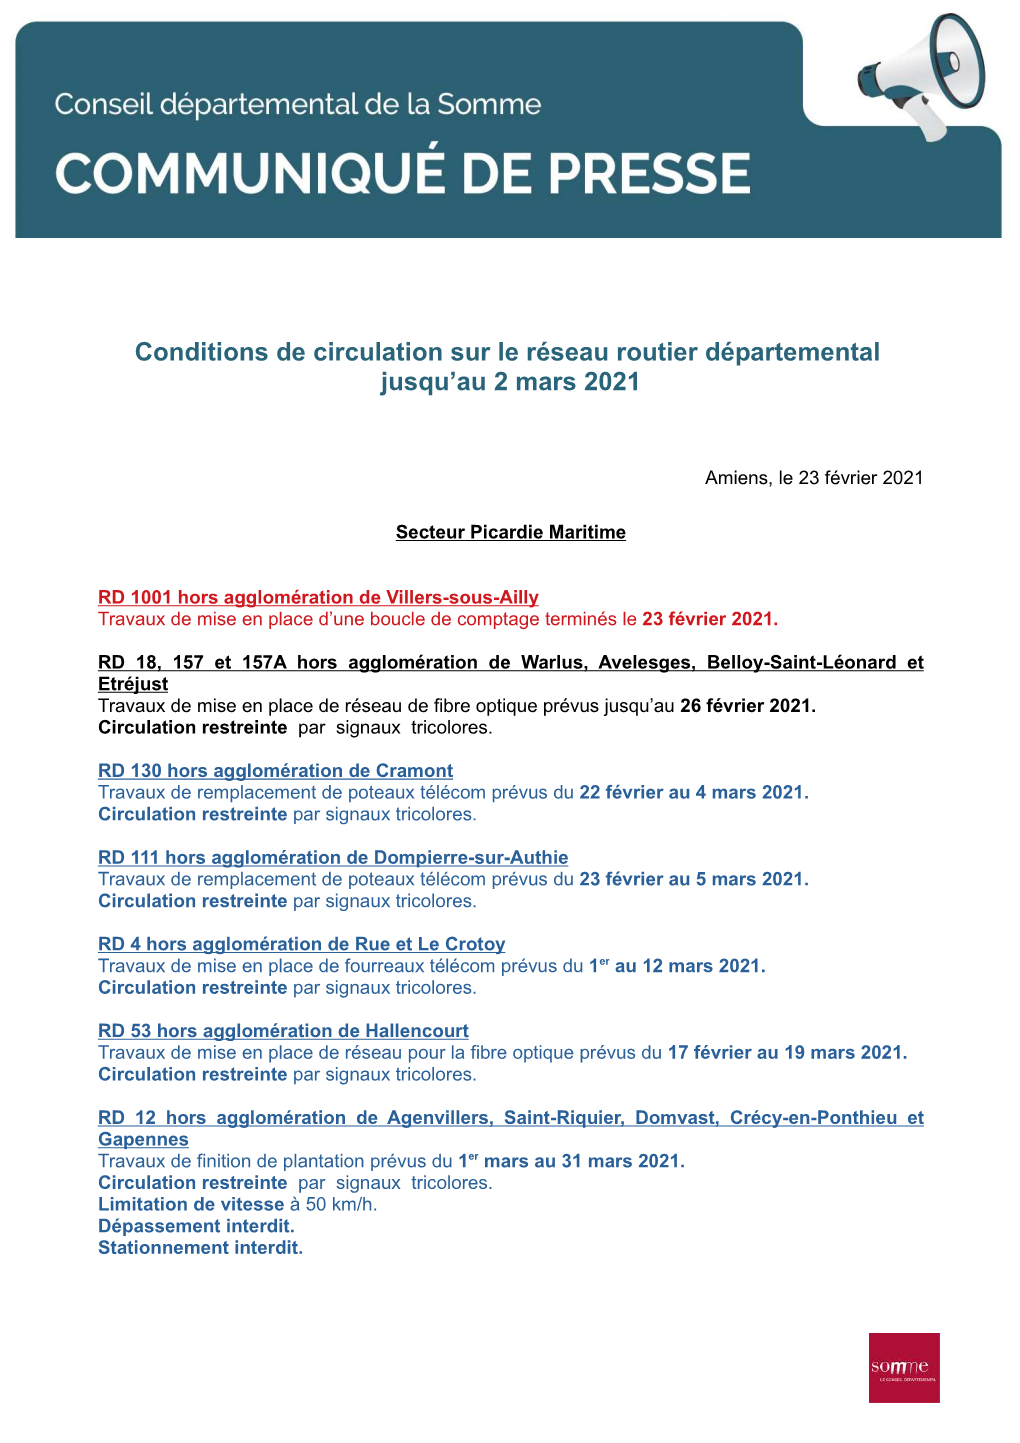 Conditions De Circulation Sur Le Réseau Routier Départemental Jusqu'au 2